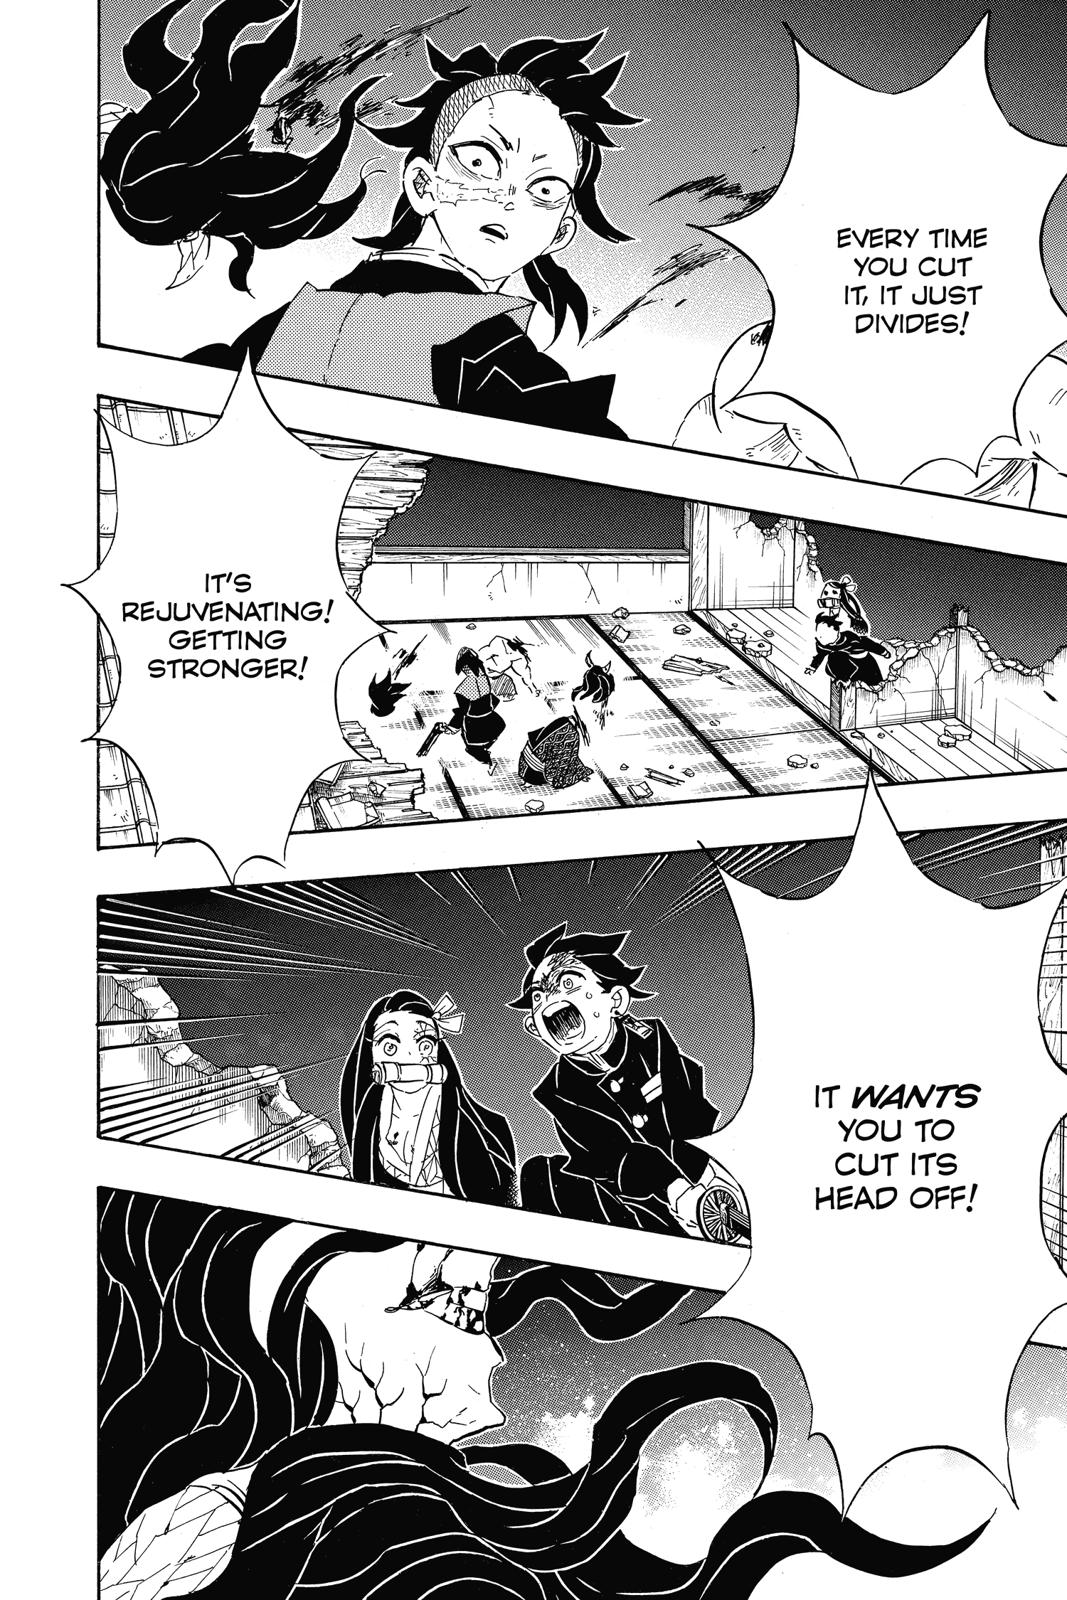 Demon Slayer Manga Manga Chapter - 107 - image 10